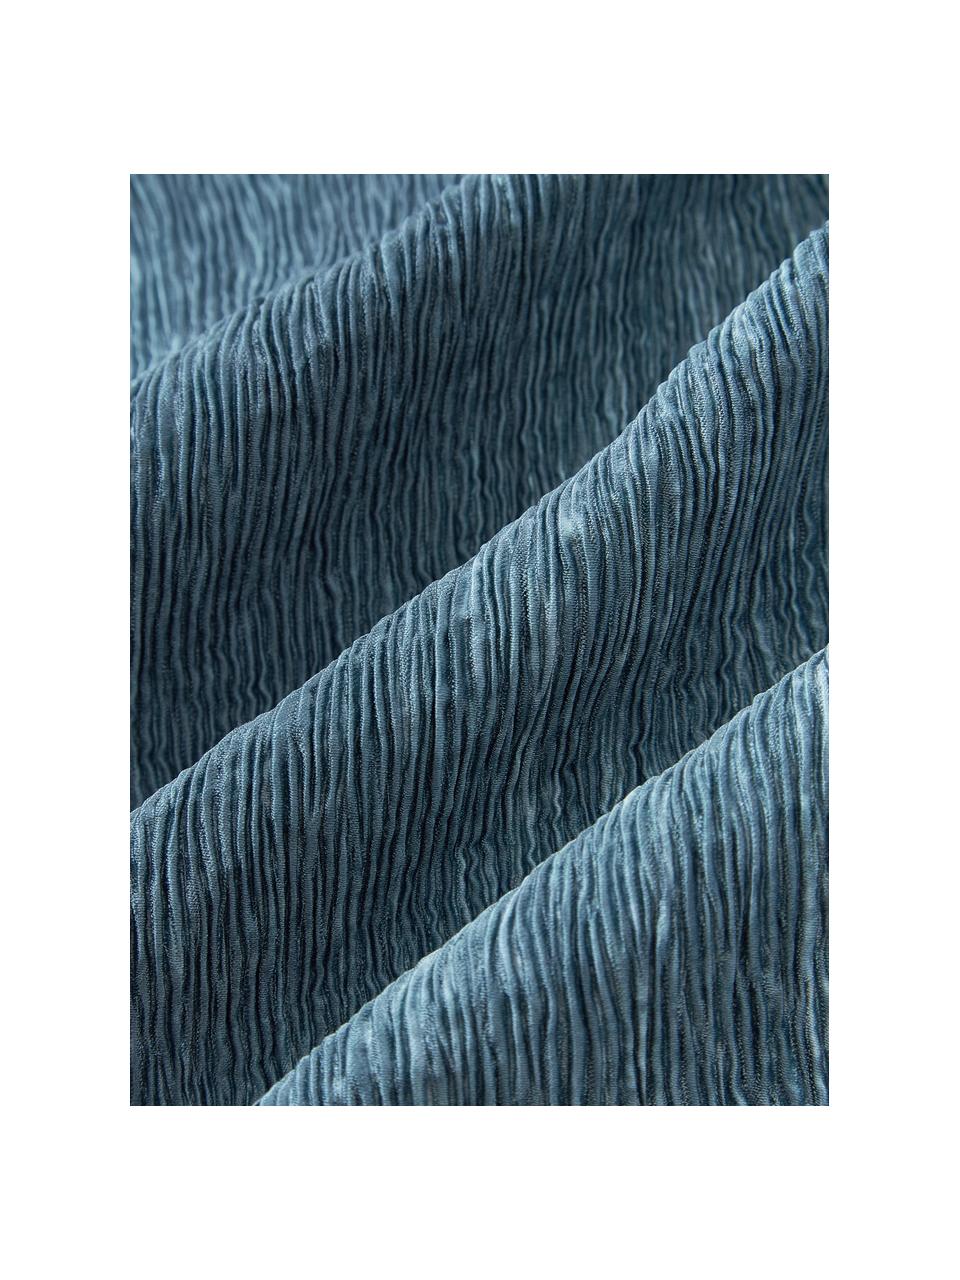 Kussenhoes Aline met gestructureerde oppervlak, 100% polyester, Blauw, B 40 x L 40 cm